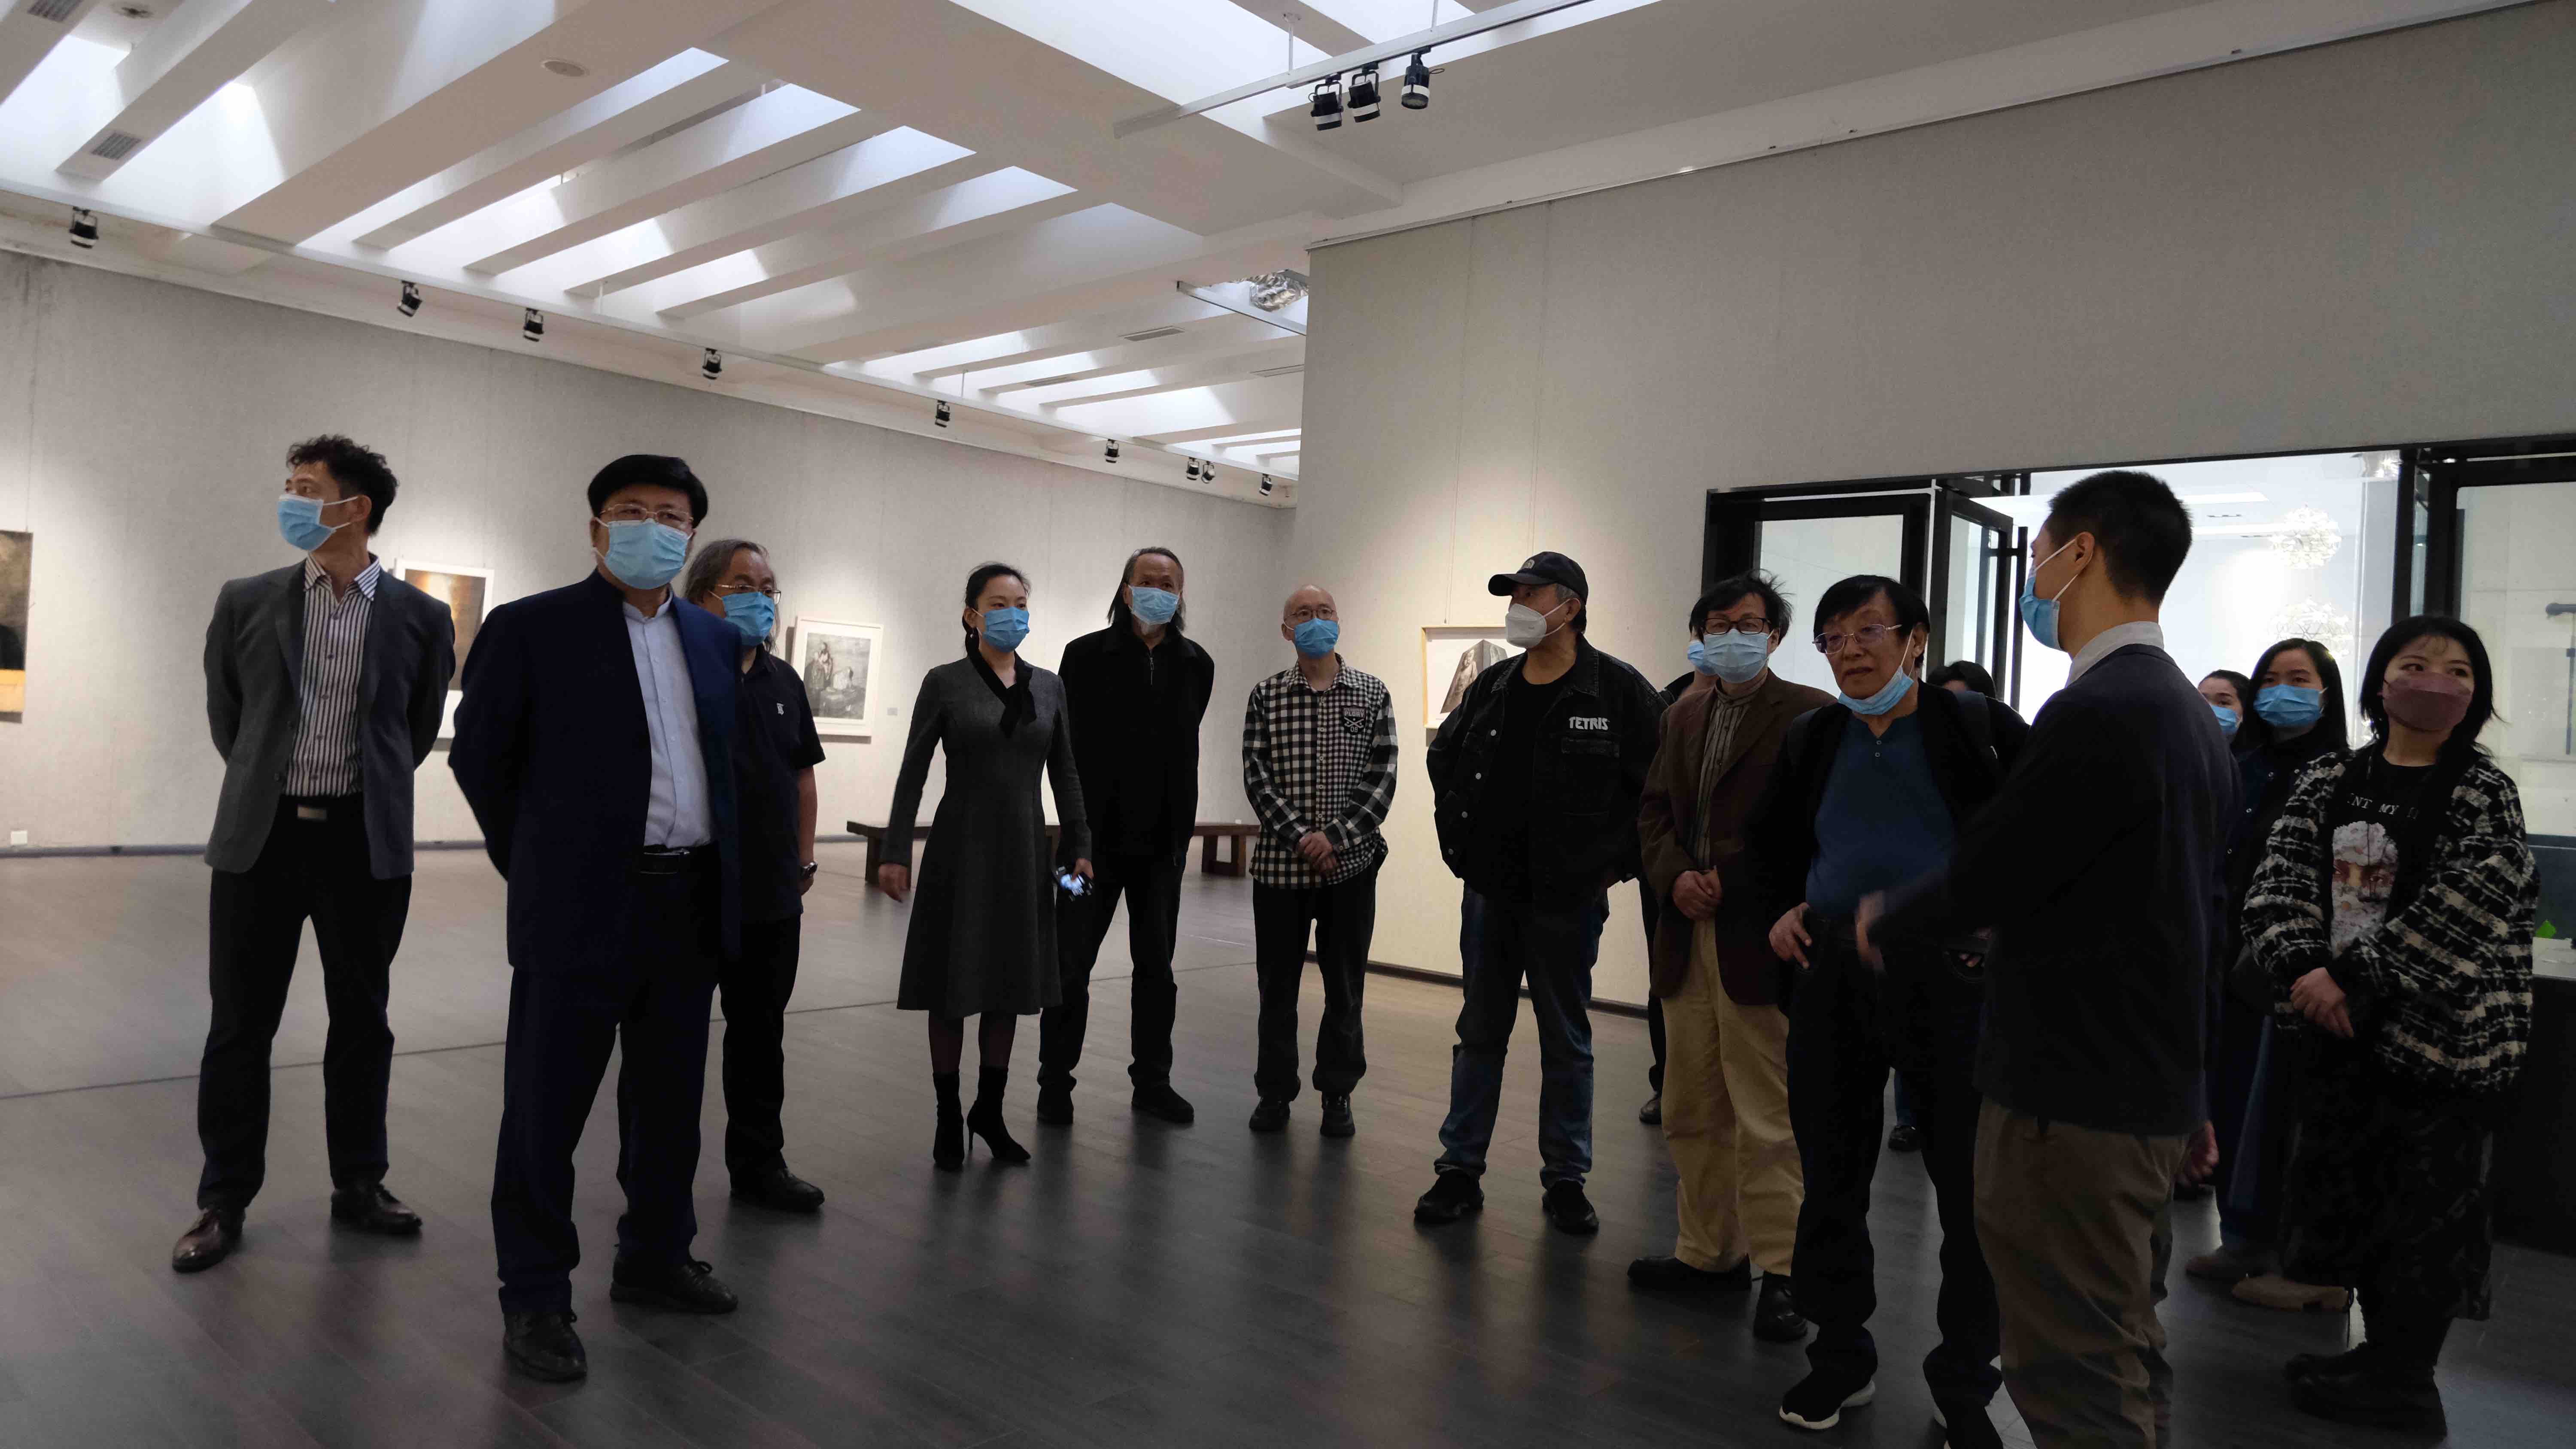 09-第八届全国画院美展调研专家组和湖南省画院的领导、专家观看展览.jpg